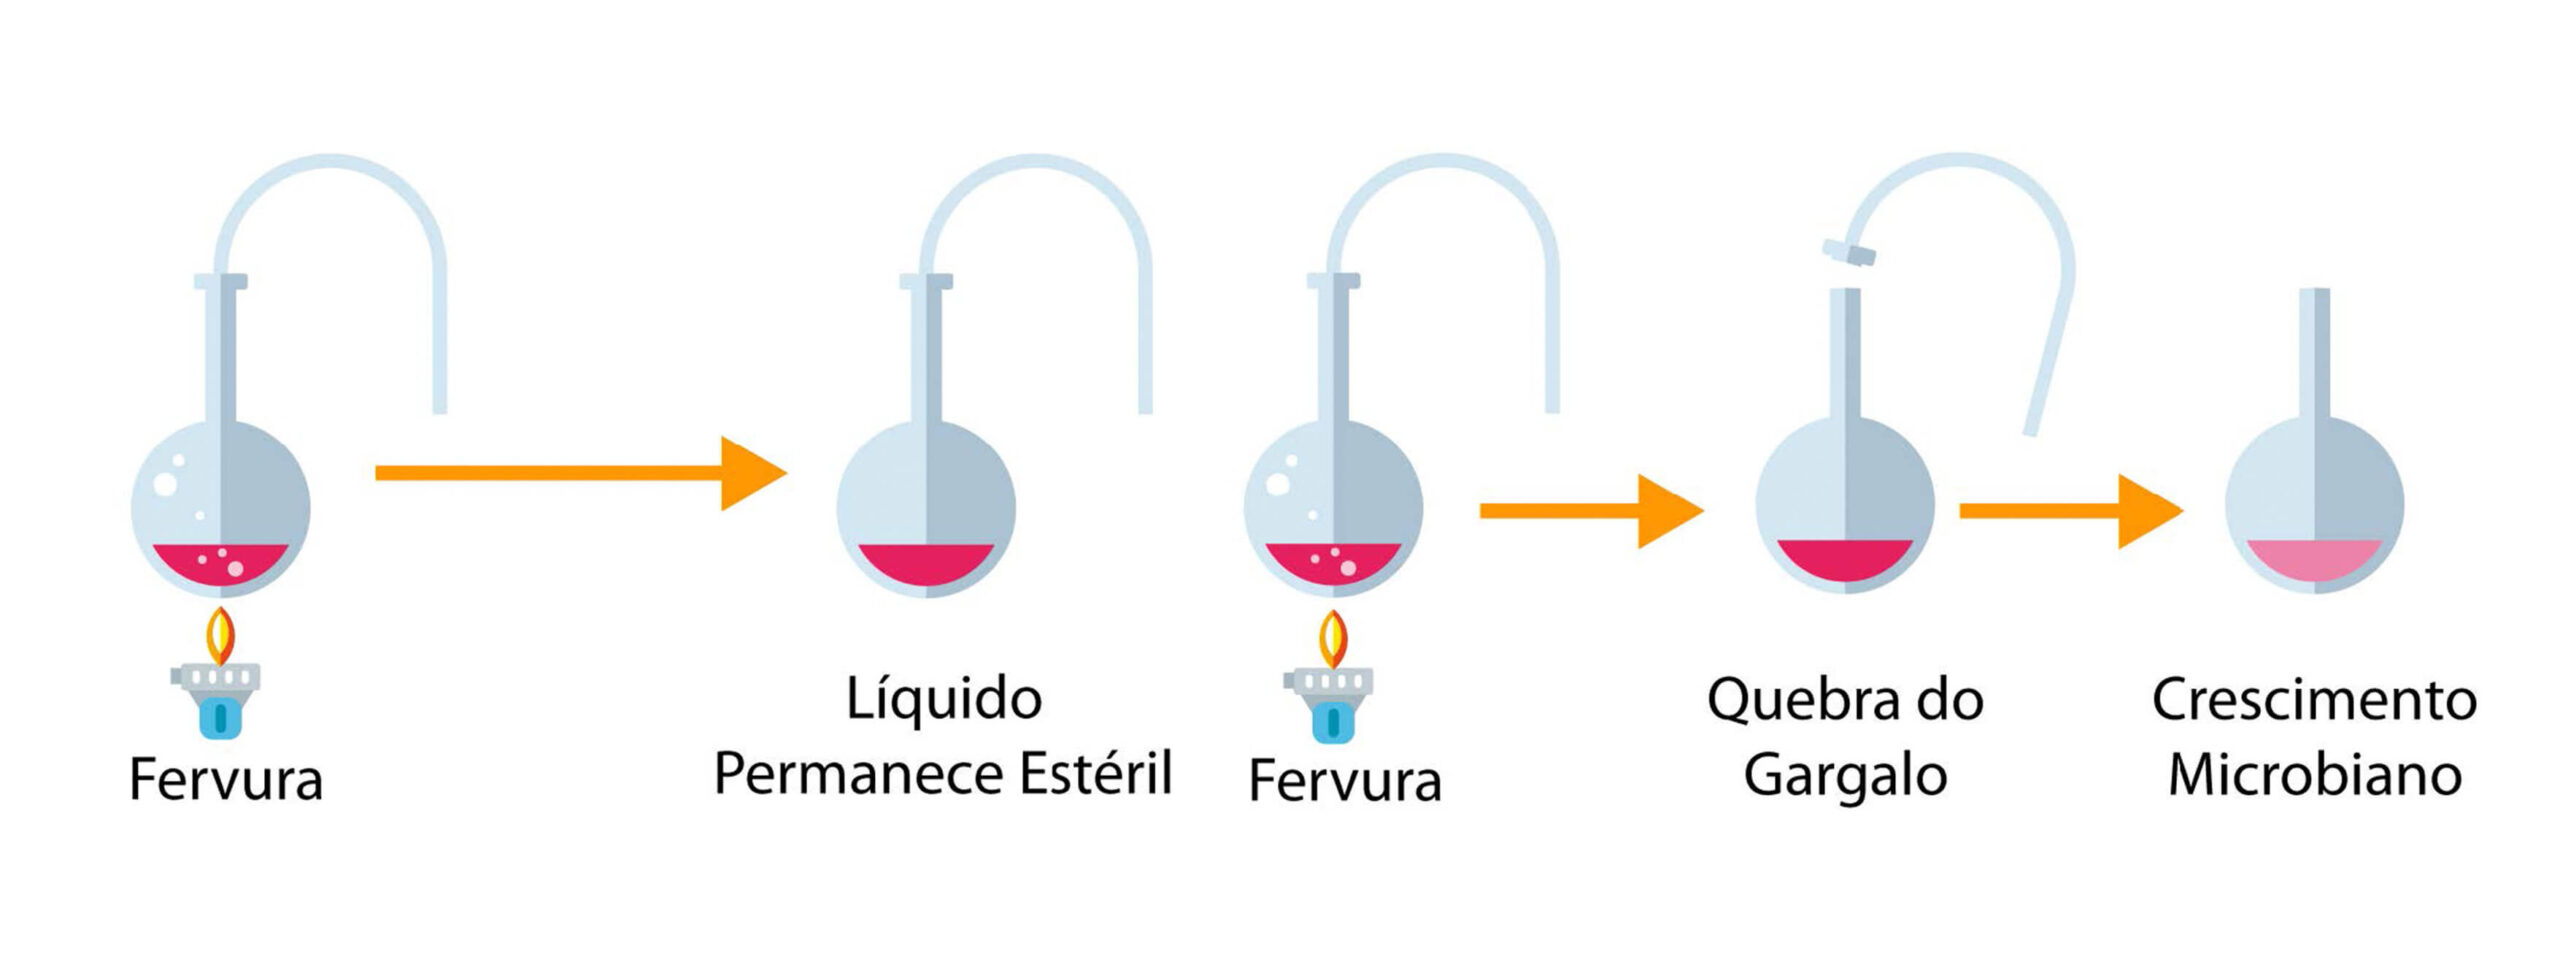 No experimento de Louis Pasteur sobre a origem da vida, primeiro, o líquido é fervido e permanece estéril quando vedado. Ao ter a quebra do gargalo, há um crescimento microbiano.